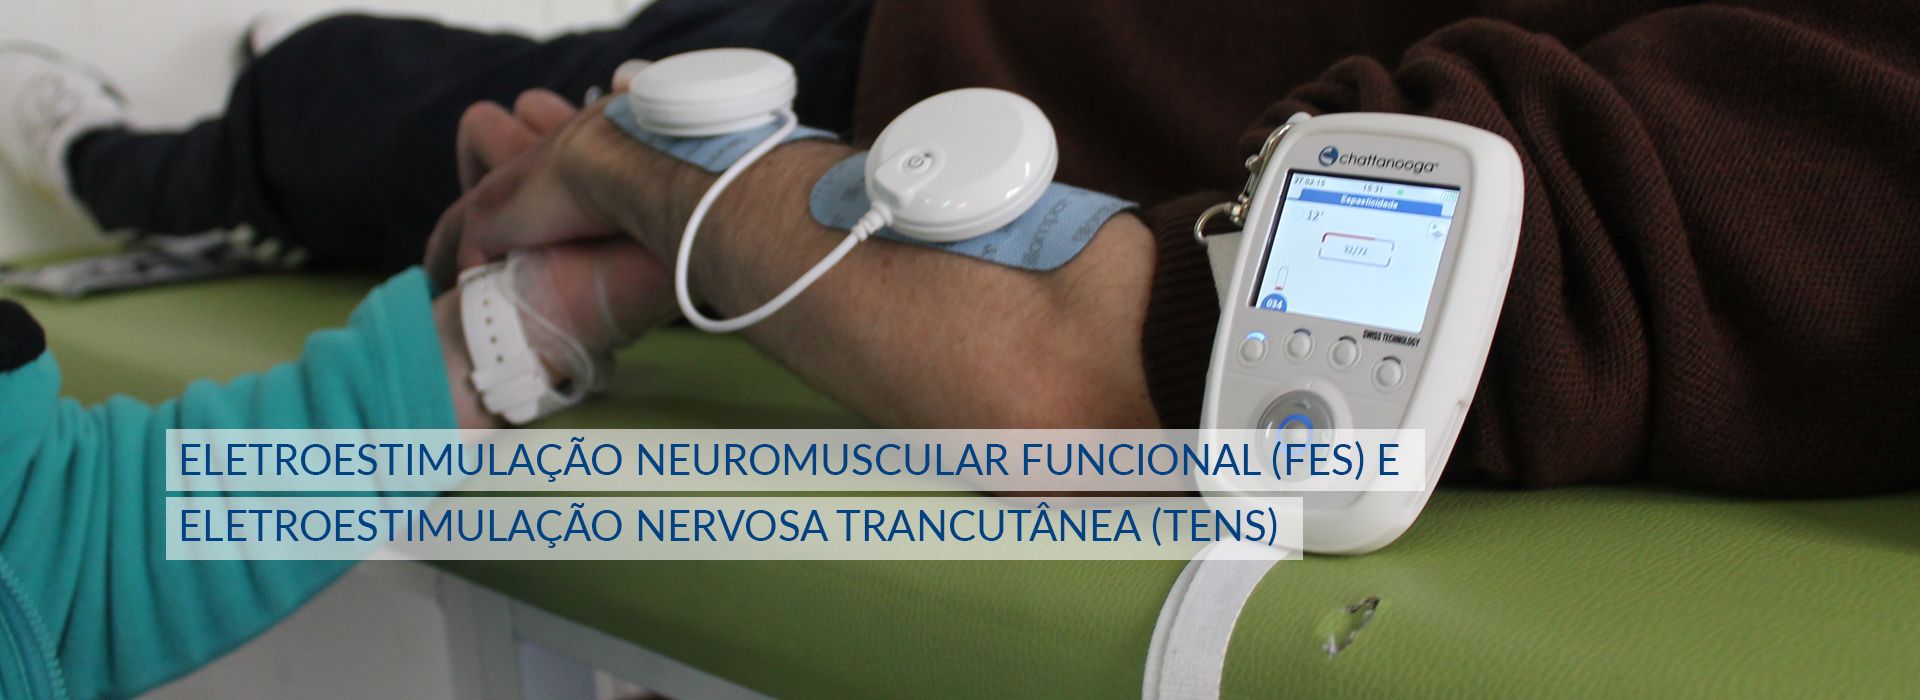 Electro-estimulação neuro-muscular